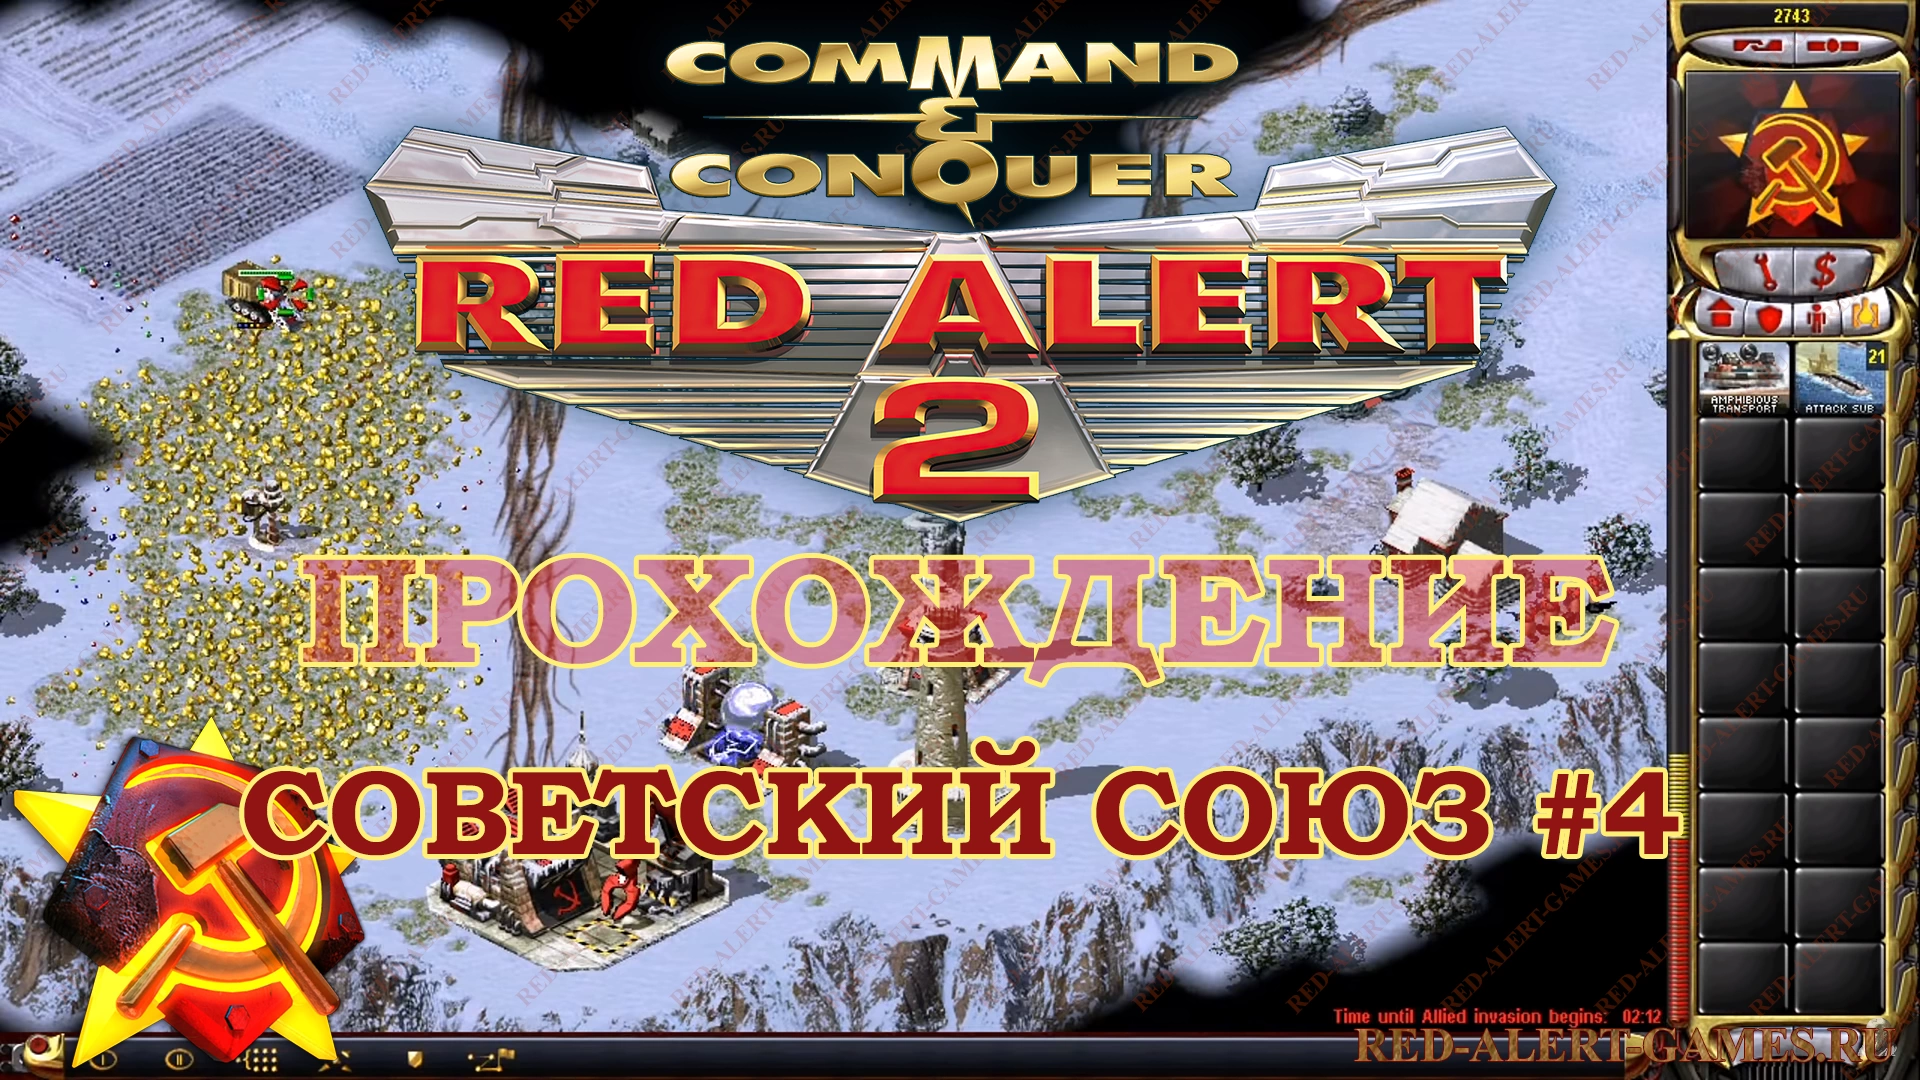 Red Alert 2 Прохождение Советский Союз - Миссия 4. Внутренний фронт (Home Front)